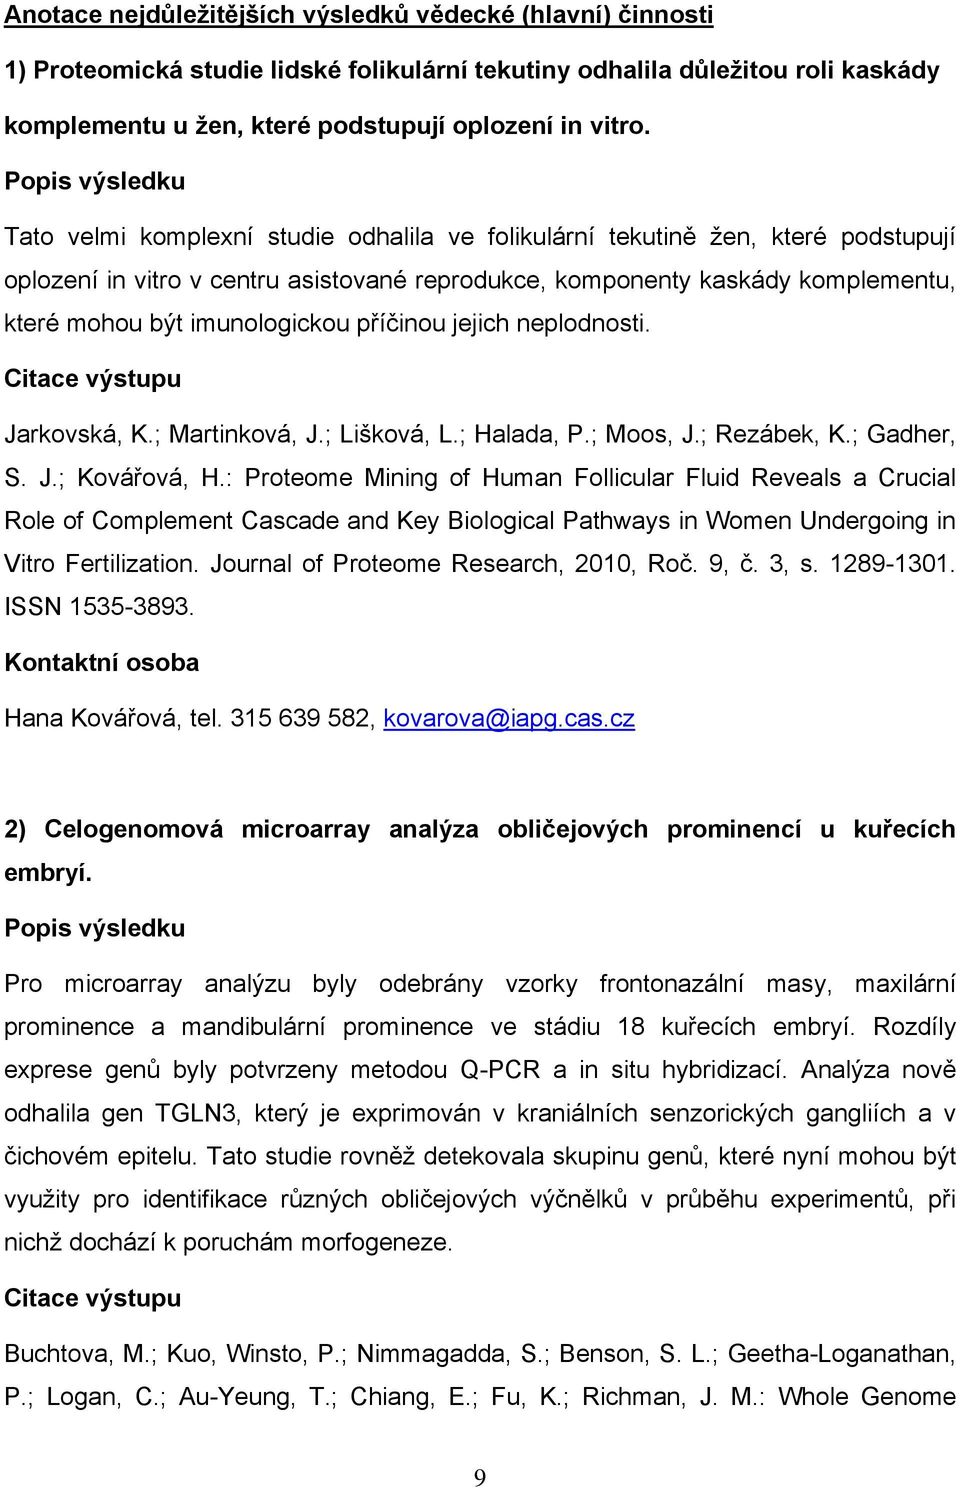 imunologickou příčinou jejich neplodnosti. Citace výstupu Jarkovská, K.; Martinková, J.; Lišková, L.; Halada, P.; Moos, J.; Rezábek, K.; Gadher, S. J.; Kovářová, H.